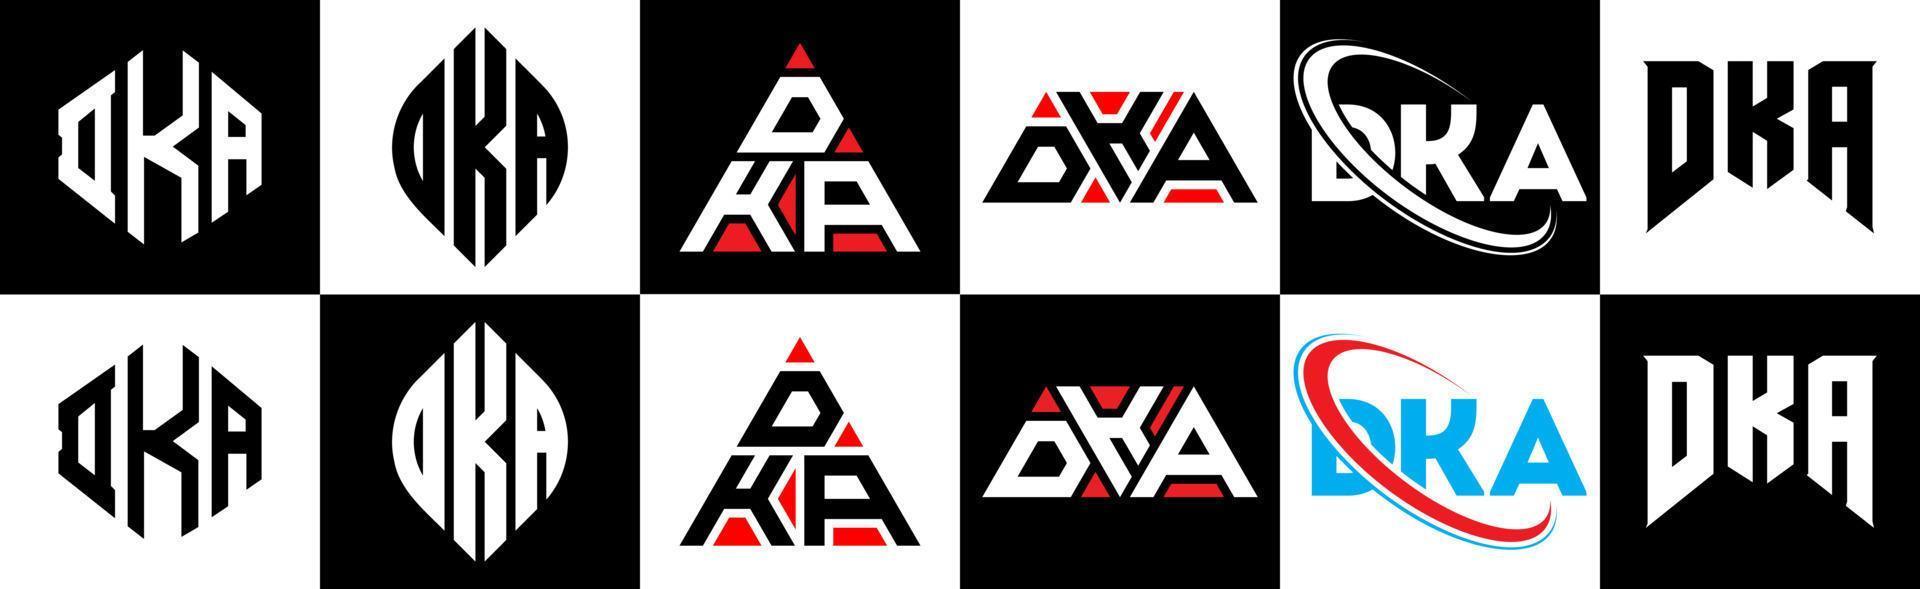 création de logo de lettre dka en six styles. dka polygone, cercle, triangle, hexagone, style plat et simple avec logo de lettre de variation de couleur noir et blanc dans un plan de travail. logo minimaliste et classique dka vecteur